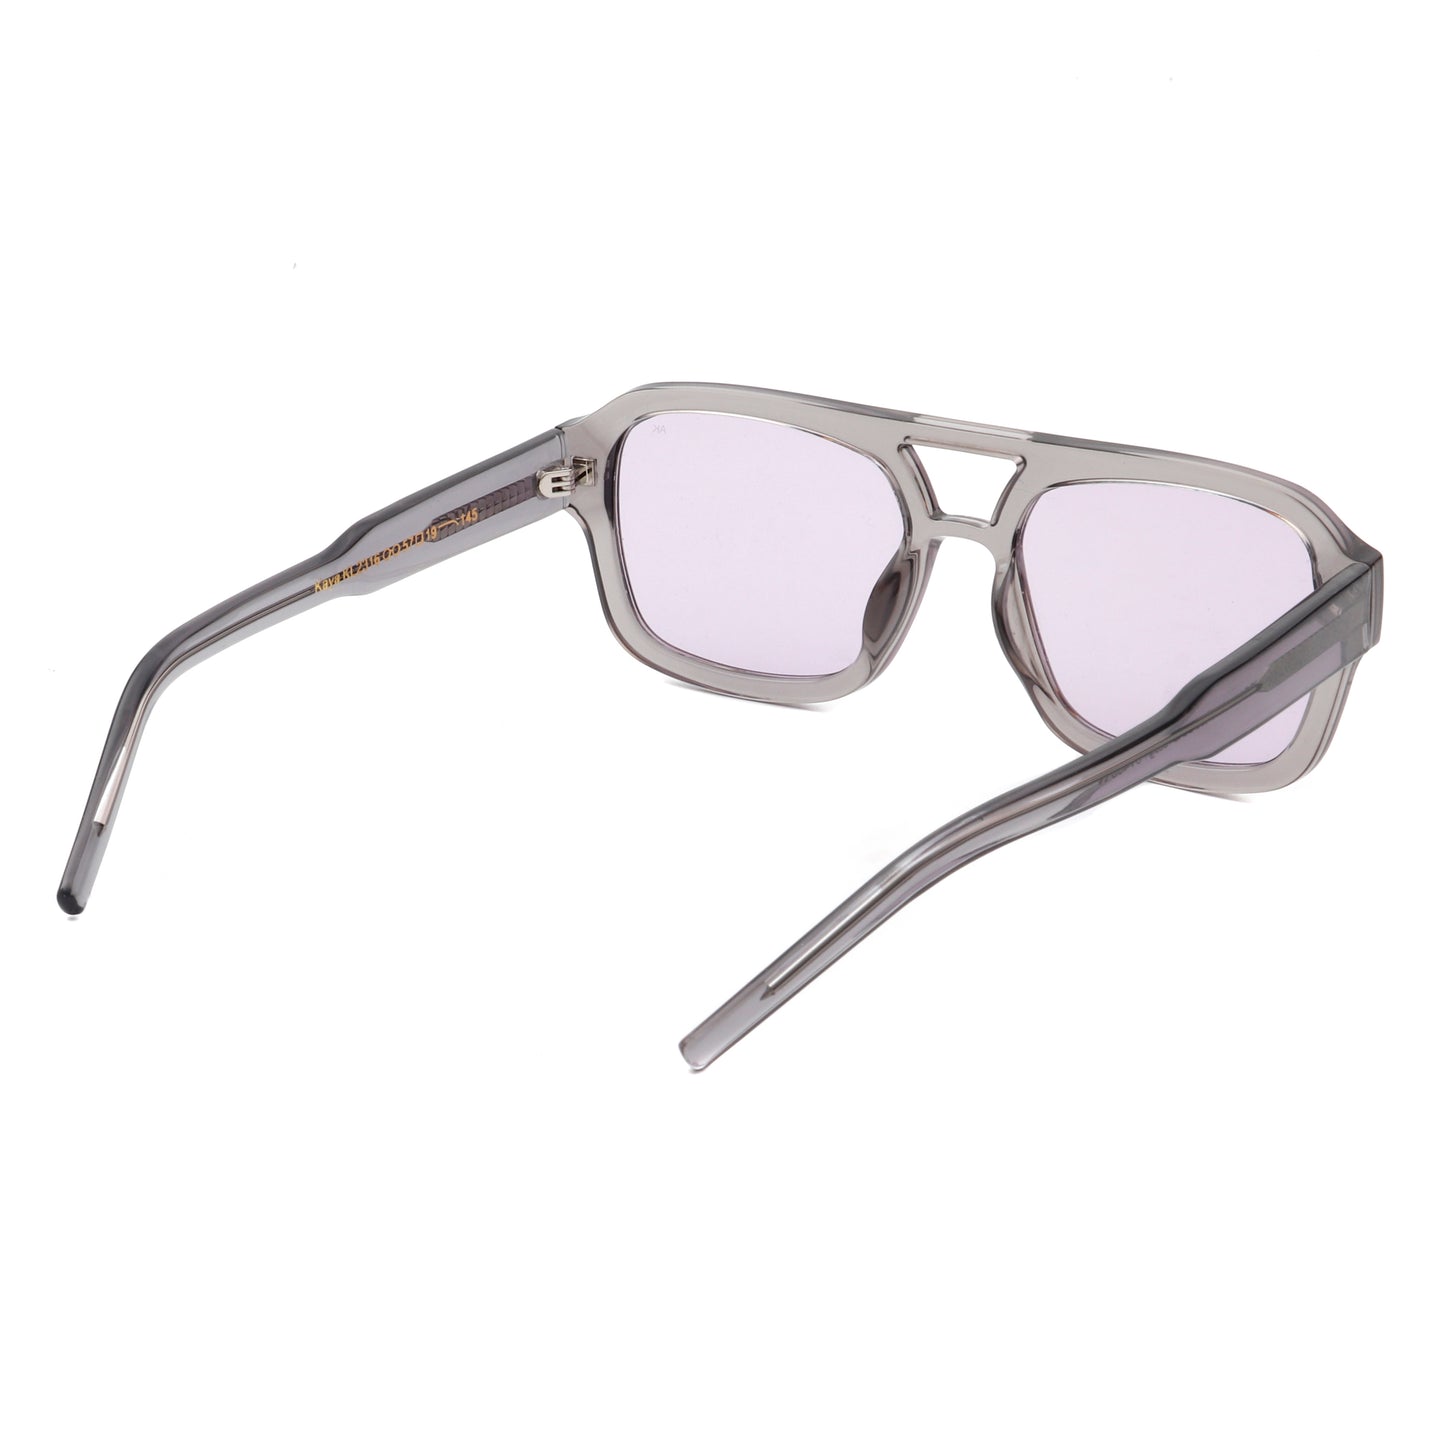 A.Kjaerbede Kaya Sunglasses in Grey Transparent color